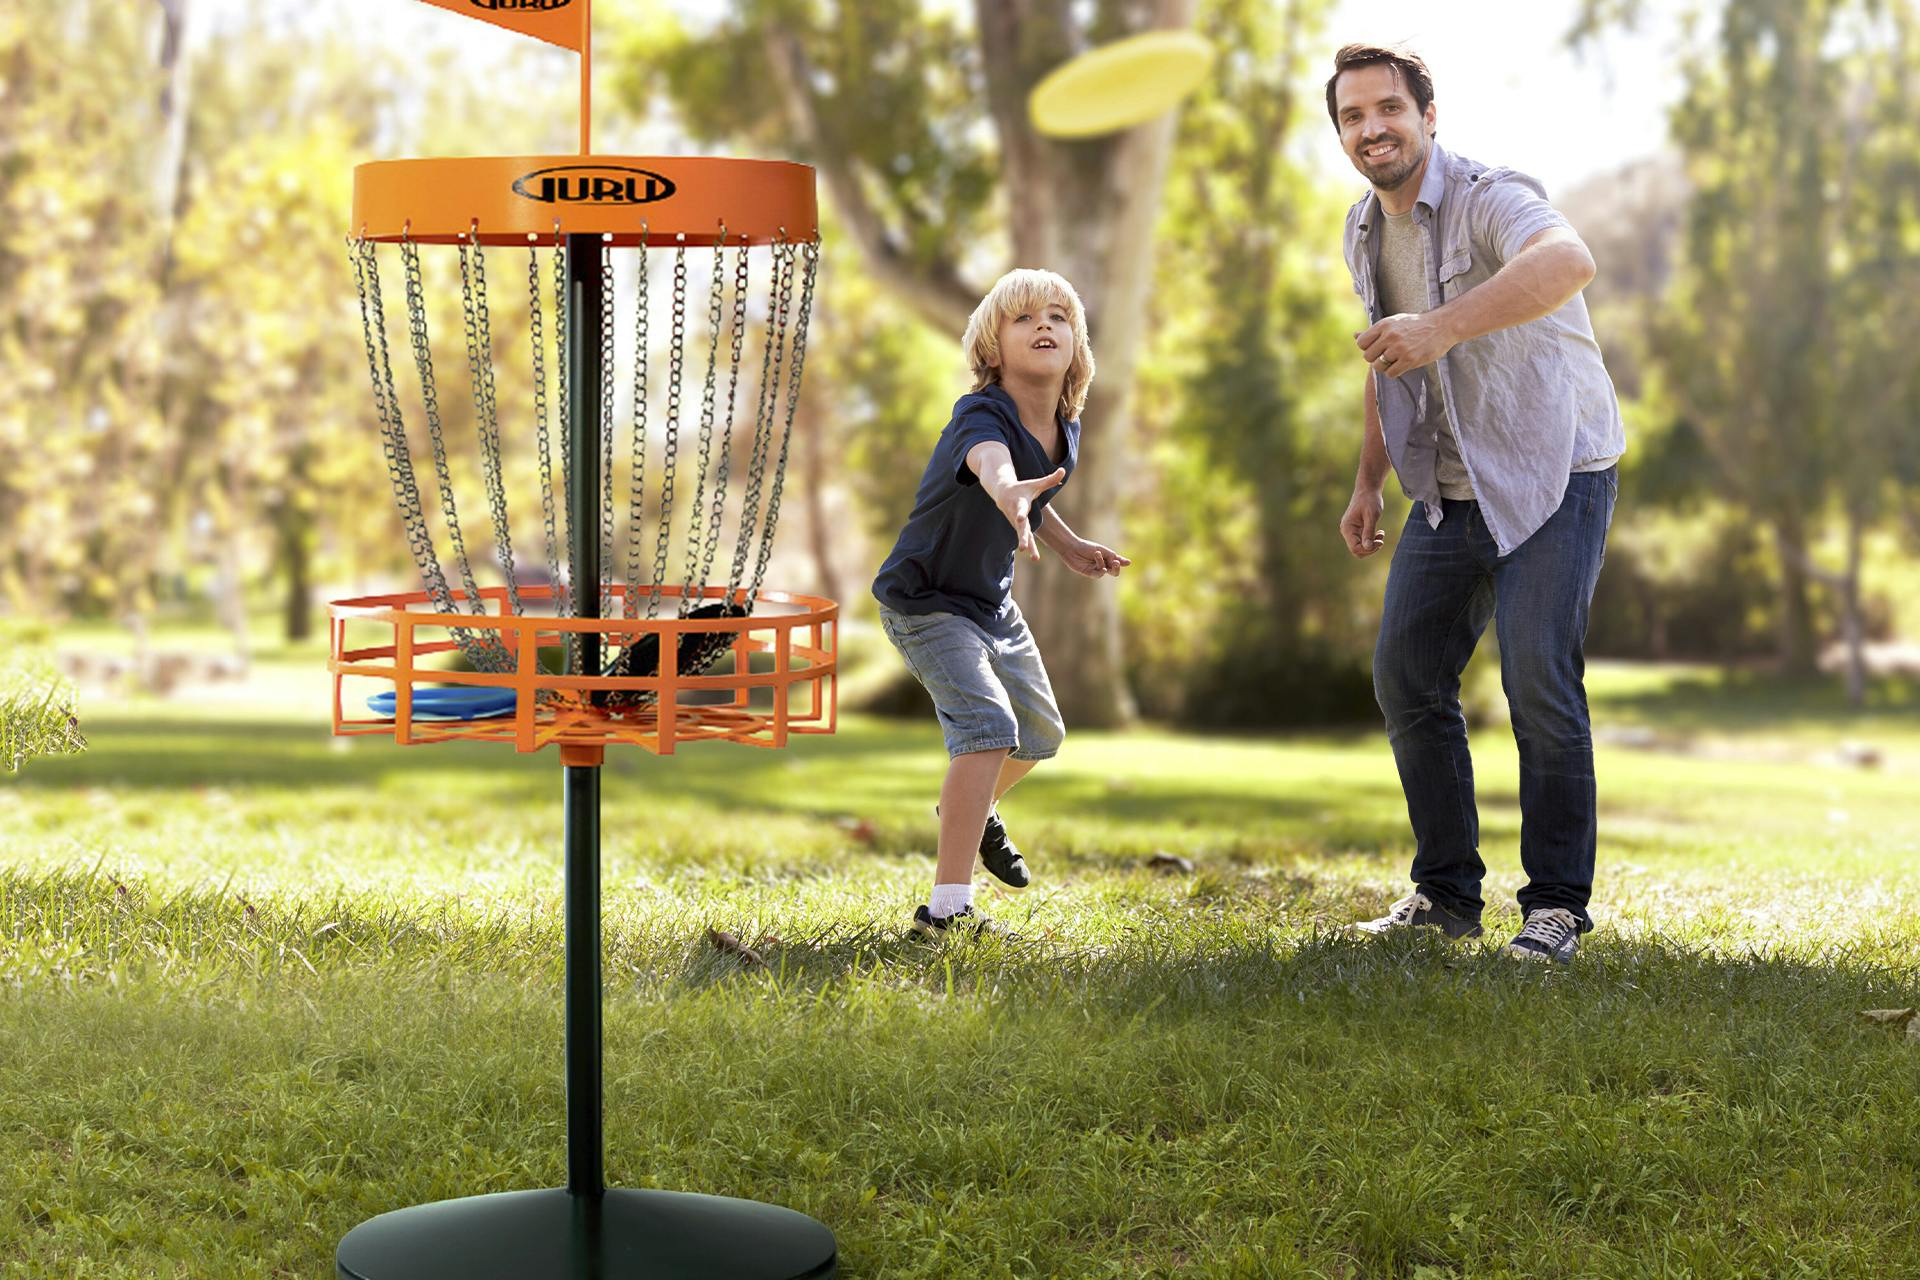 Mann og barn spiller frisbeegolf utendørs i naturen